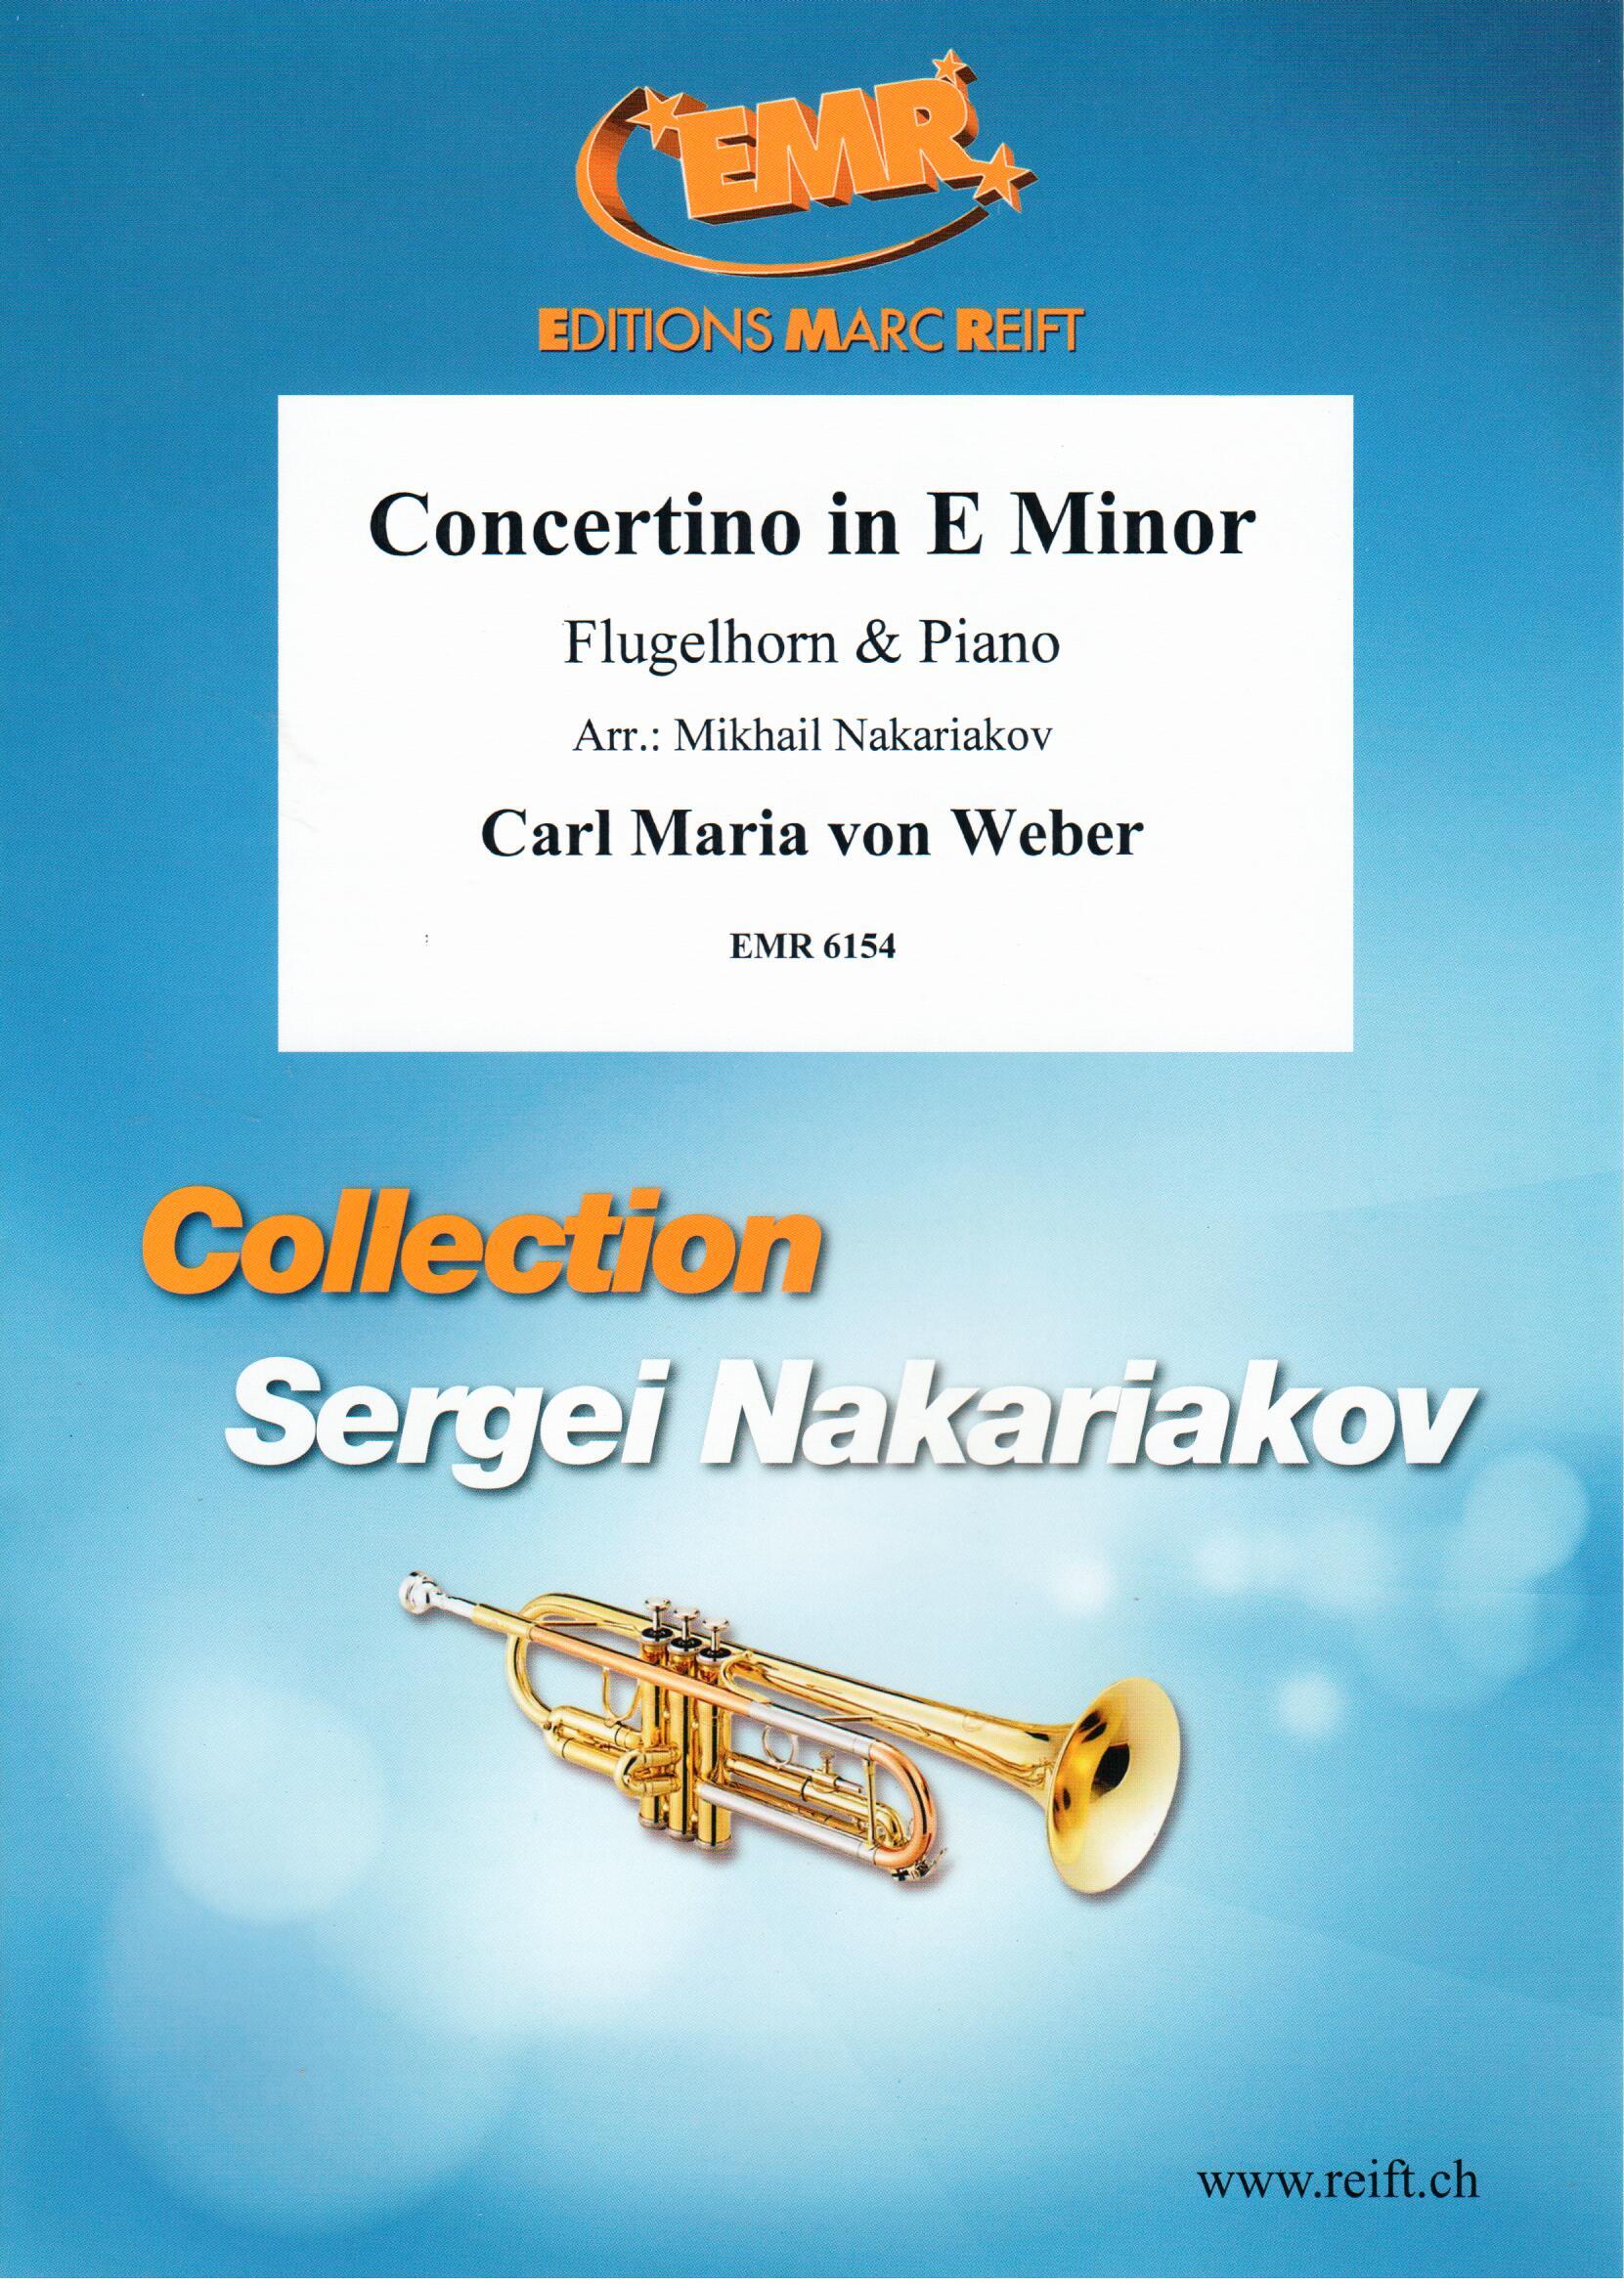 CONCERTINO IN E MINOR, SOLOS - B♭. Cornet/Trumpet with Piano